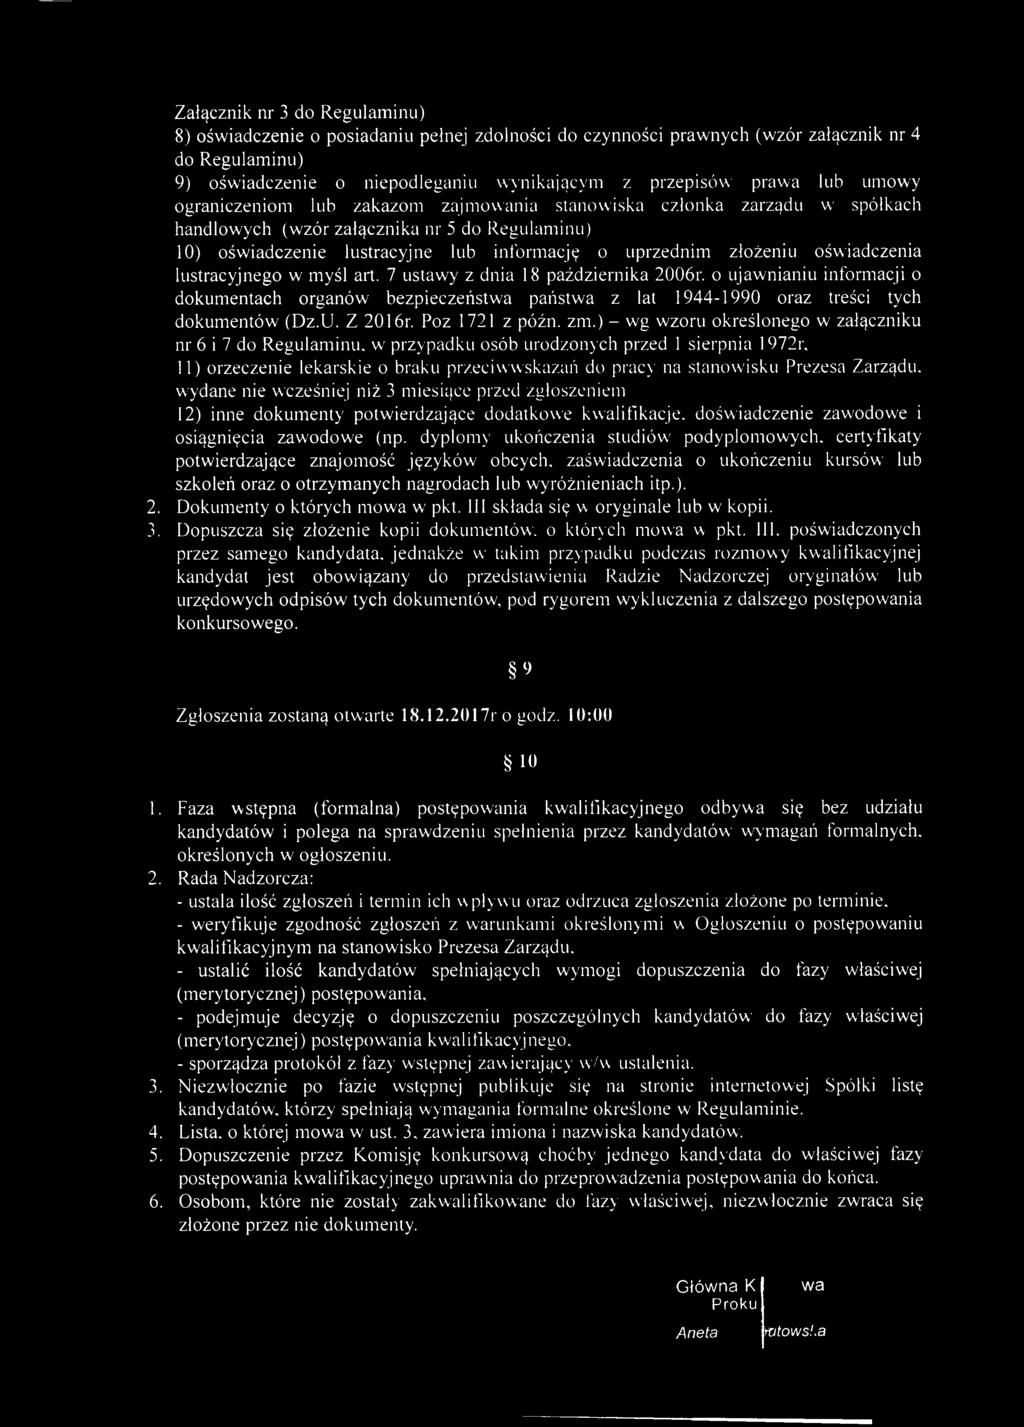 oświadczenia lustracyjnego w myśl art. 7 ustawy z dnia 18 października 2006r. o ujawnianiu informacji o dokumentach organów bezpieczeństwa państwa z lat 1944-1990 oraz treści tych dokumentów (Dz.U.